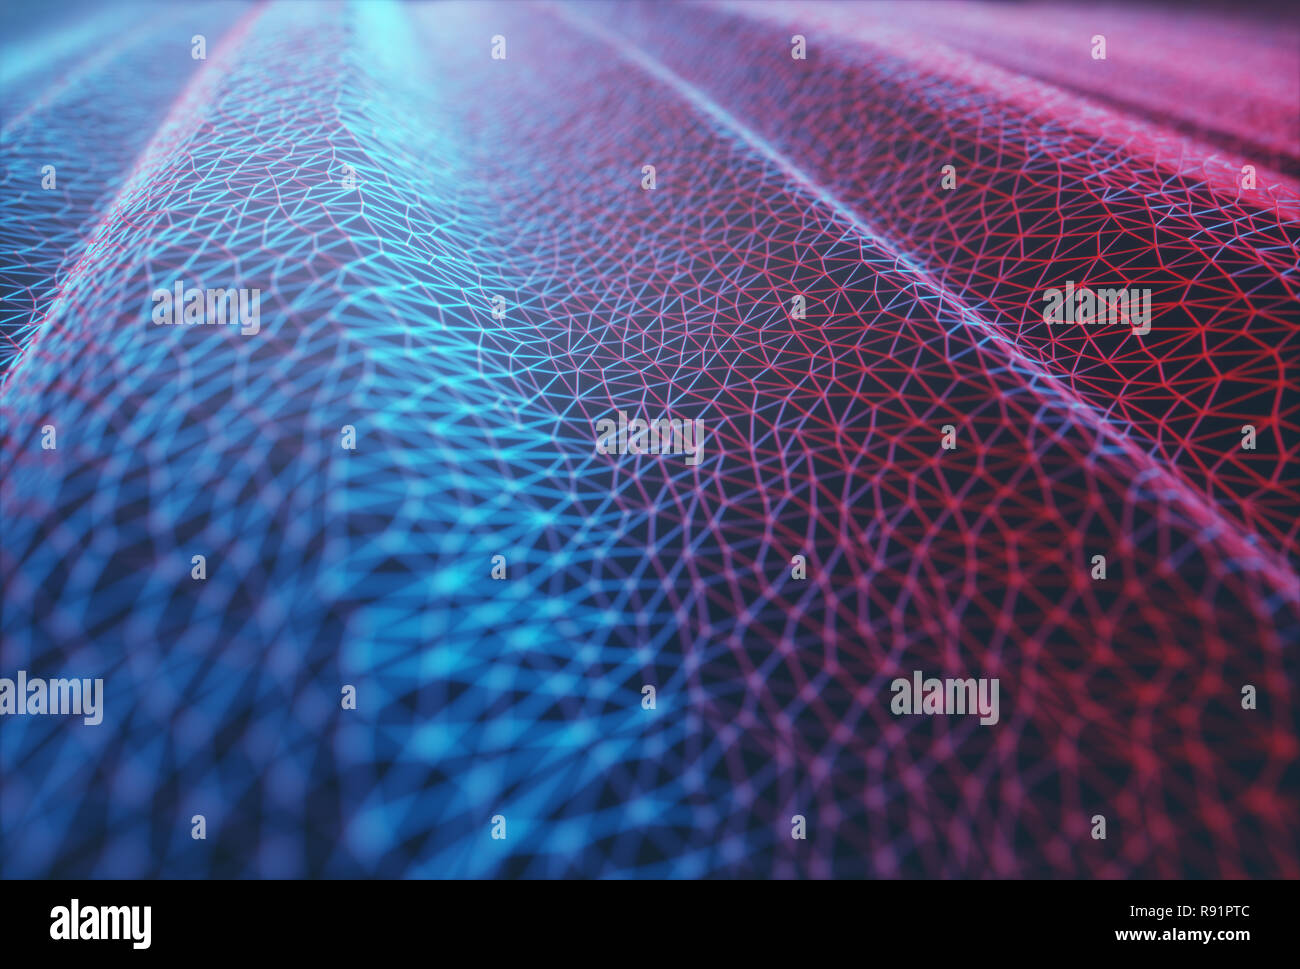 3D-Darstellung. Abstract background Image. Farbige mesh, miteinander verbundenen Linien. Stockfoto